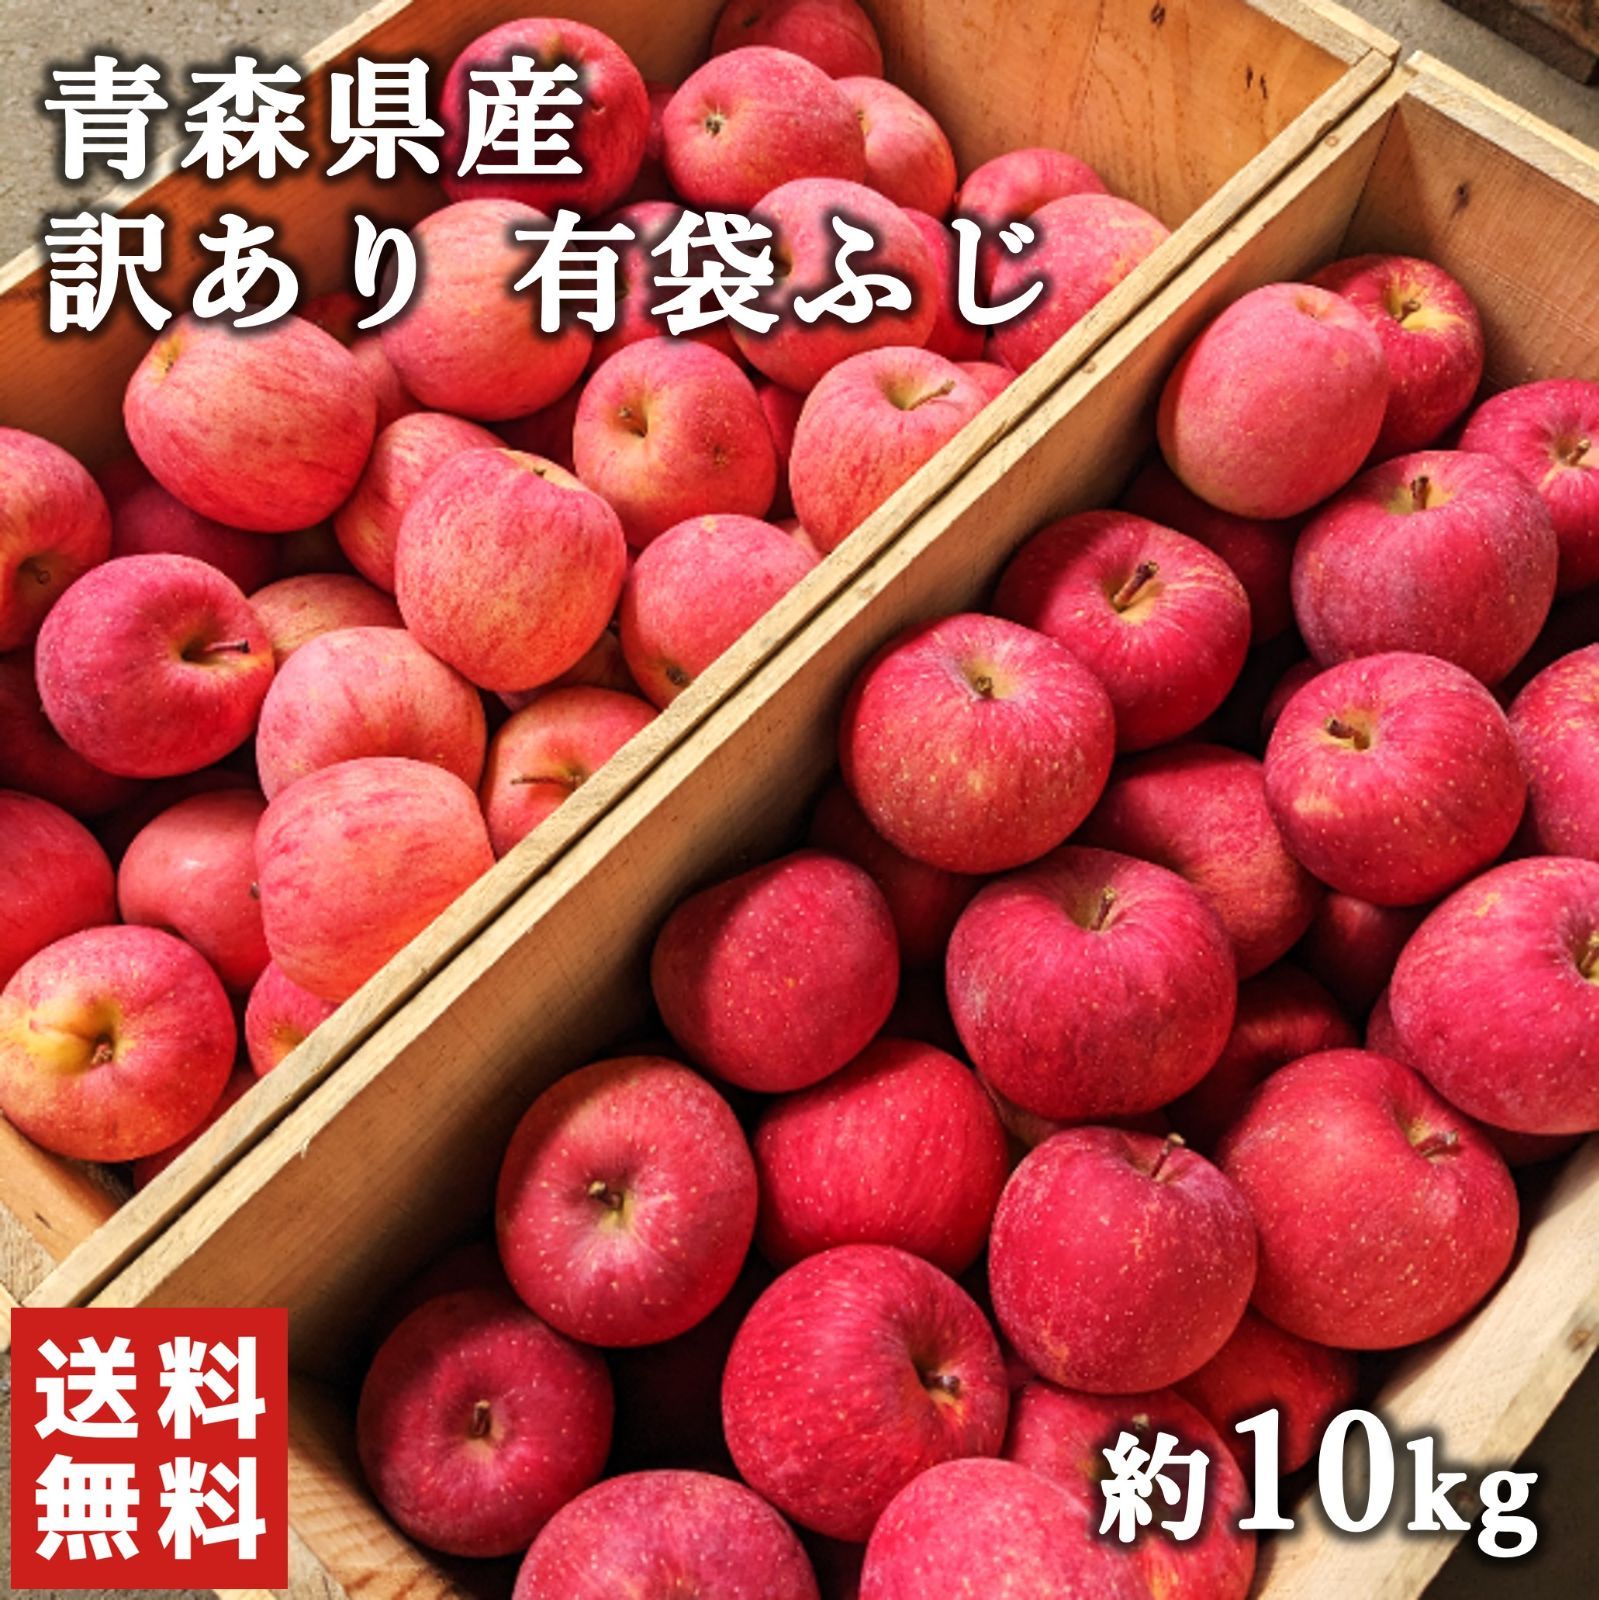 青森県産  有袋ふじ りんご  家庭用  10kg  農家直送 送料無料 リンゴ